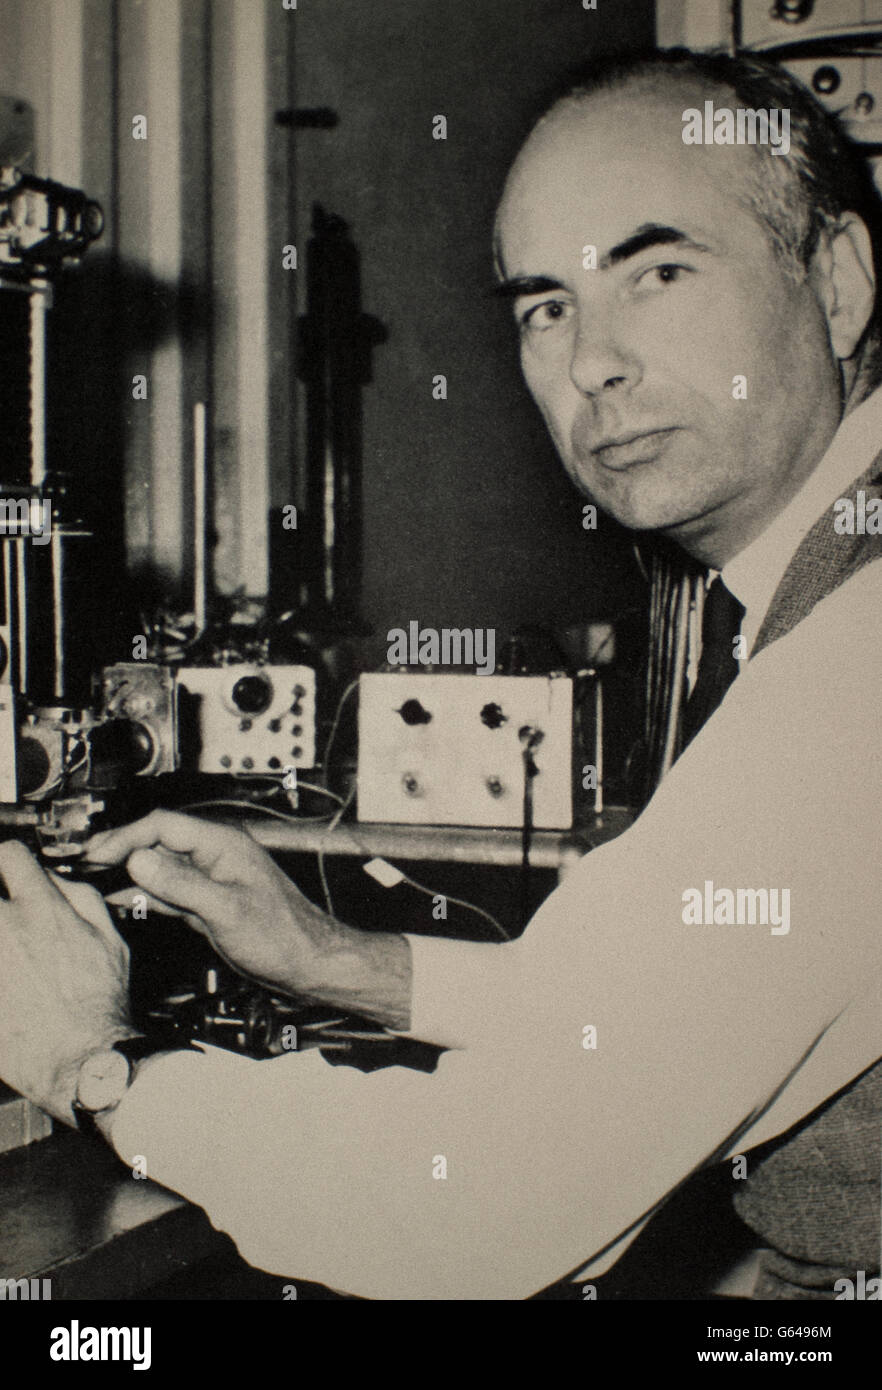 Sir Andrew Fielding Huxley (Hampstead, 22. November 1917 - Grantchester, 30. Mai 2012) war ein englischer Physiologe Stockfoto